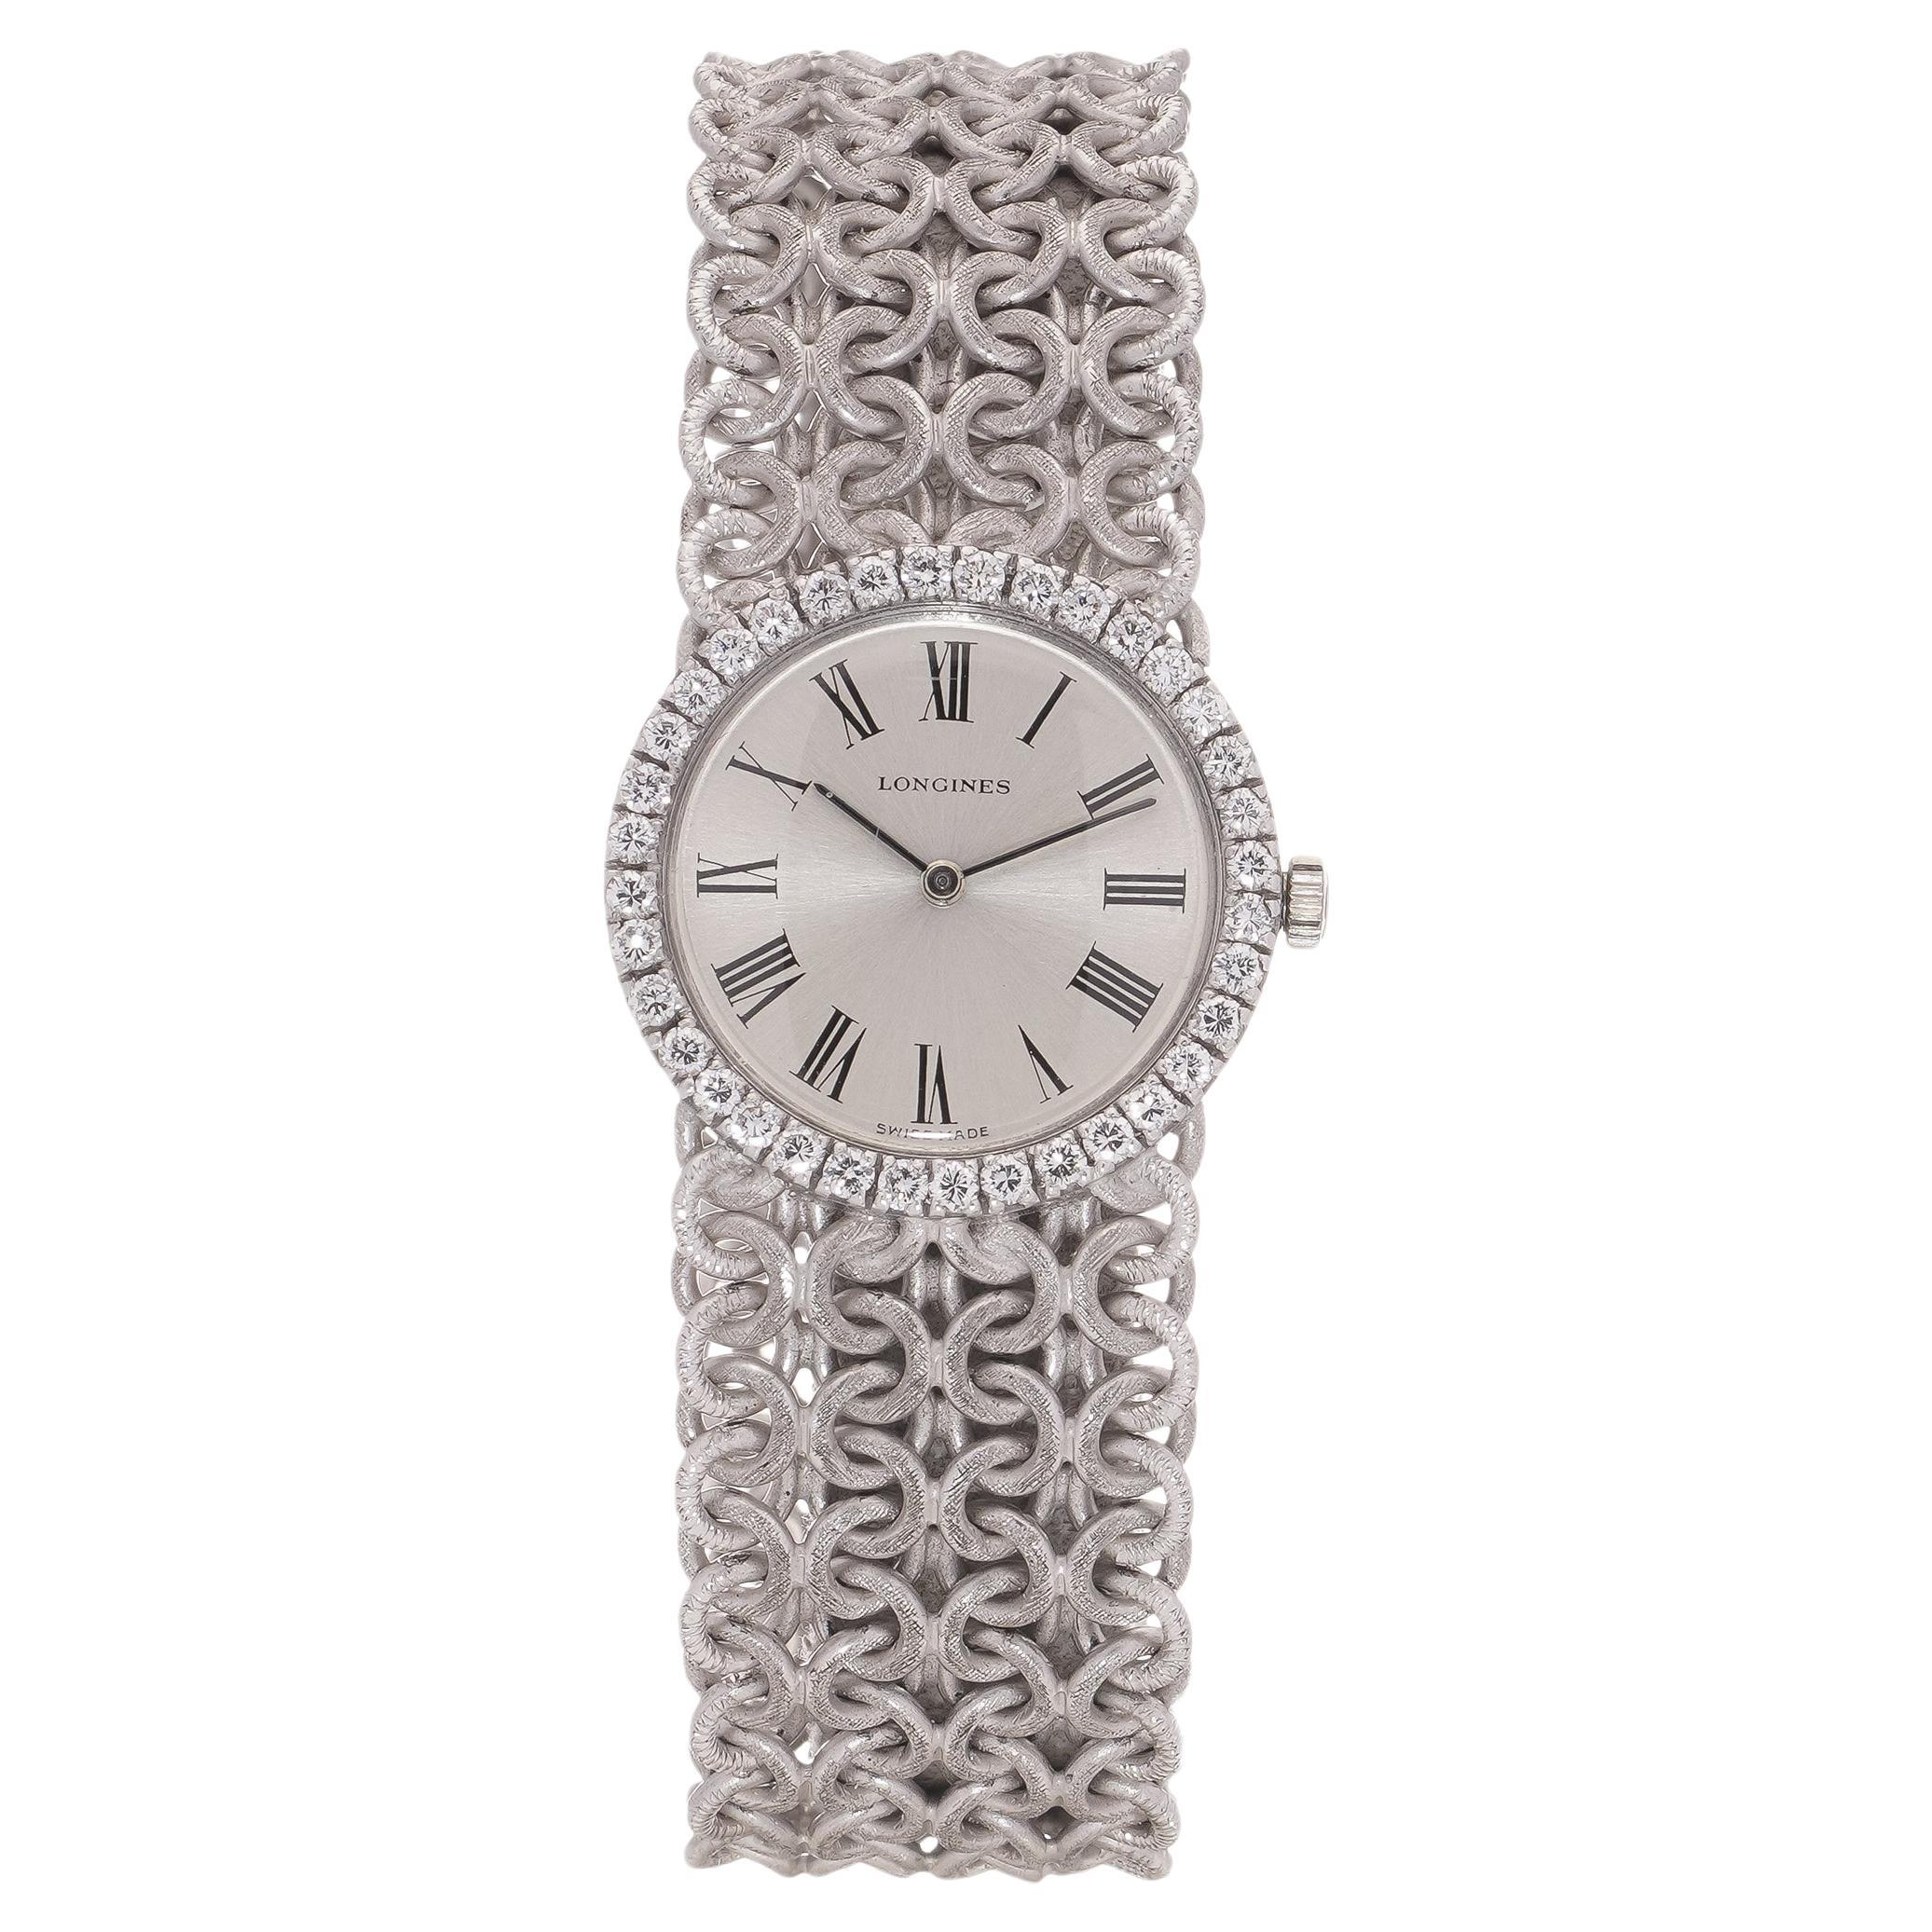 Longines Montre-bracelet pour femme en or blanc 18 carats avec lunette sertie de diamants